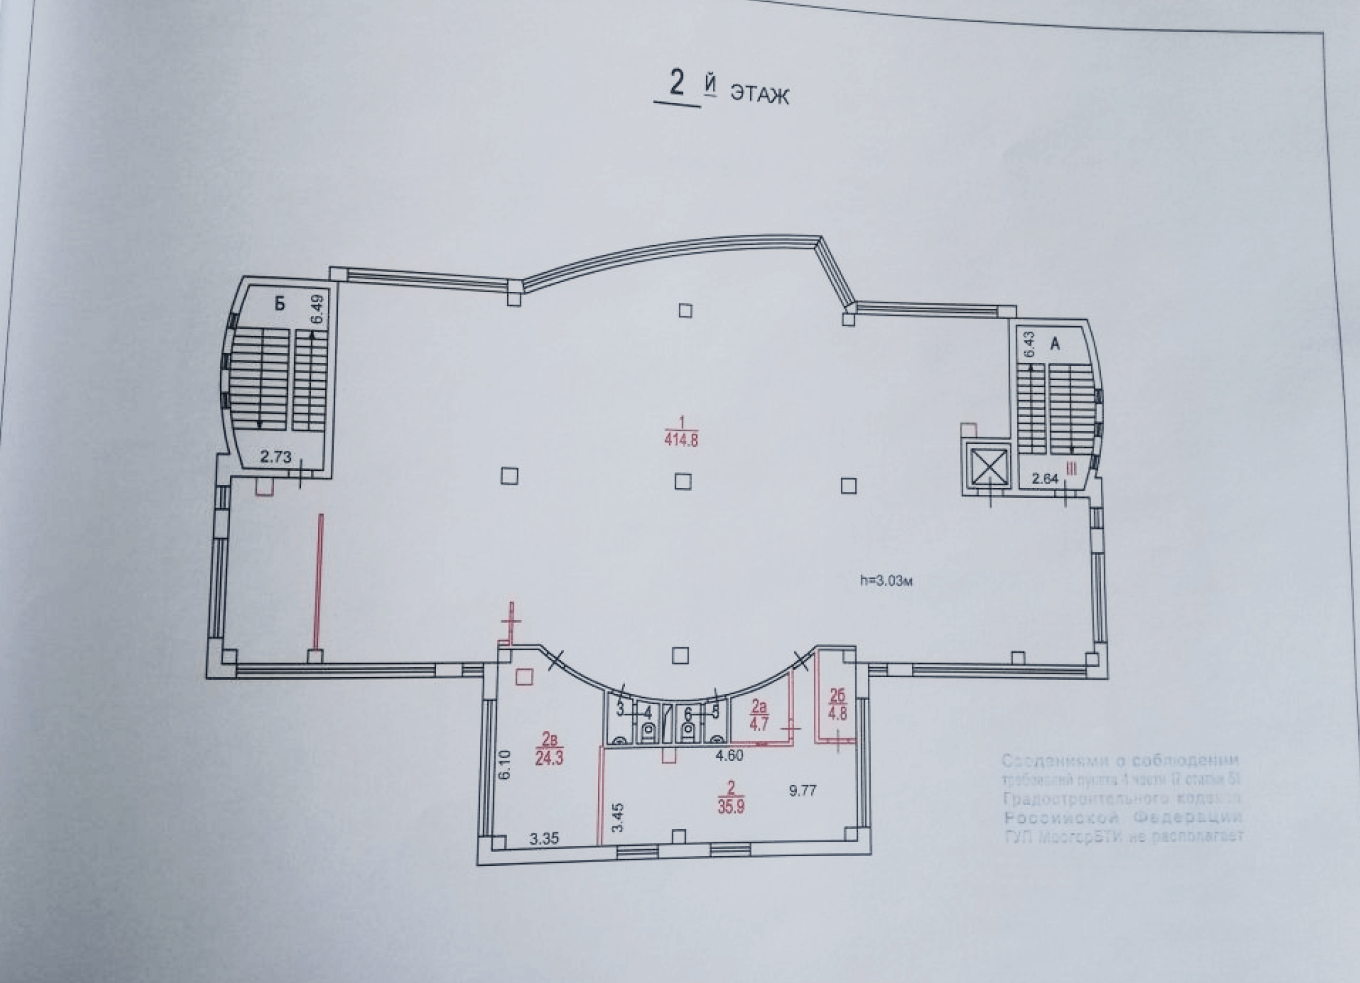 Общий план помещения с указанием площади, высоты потолков, несущих стен и окон